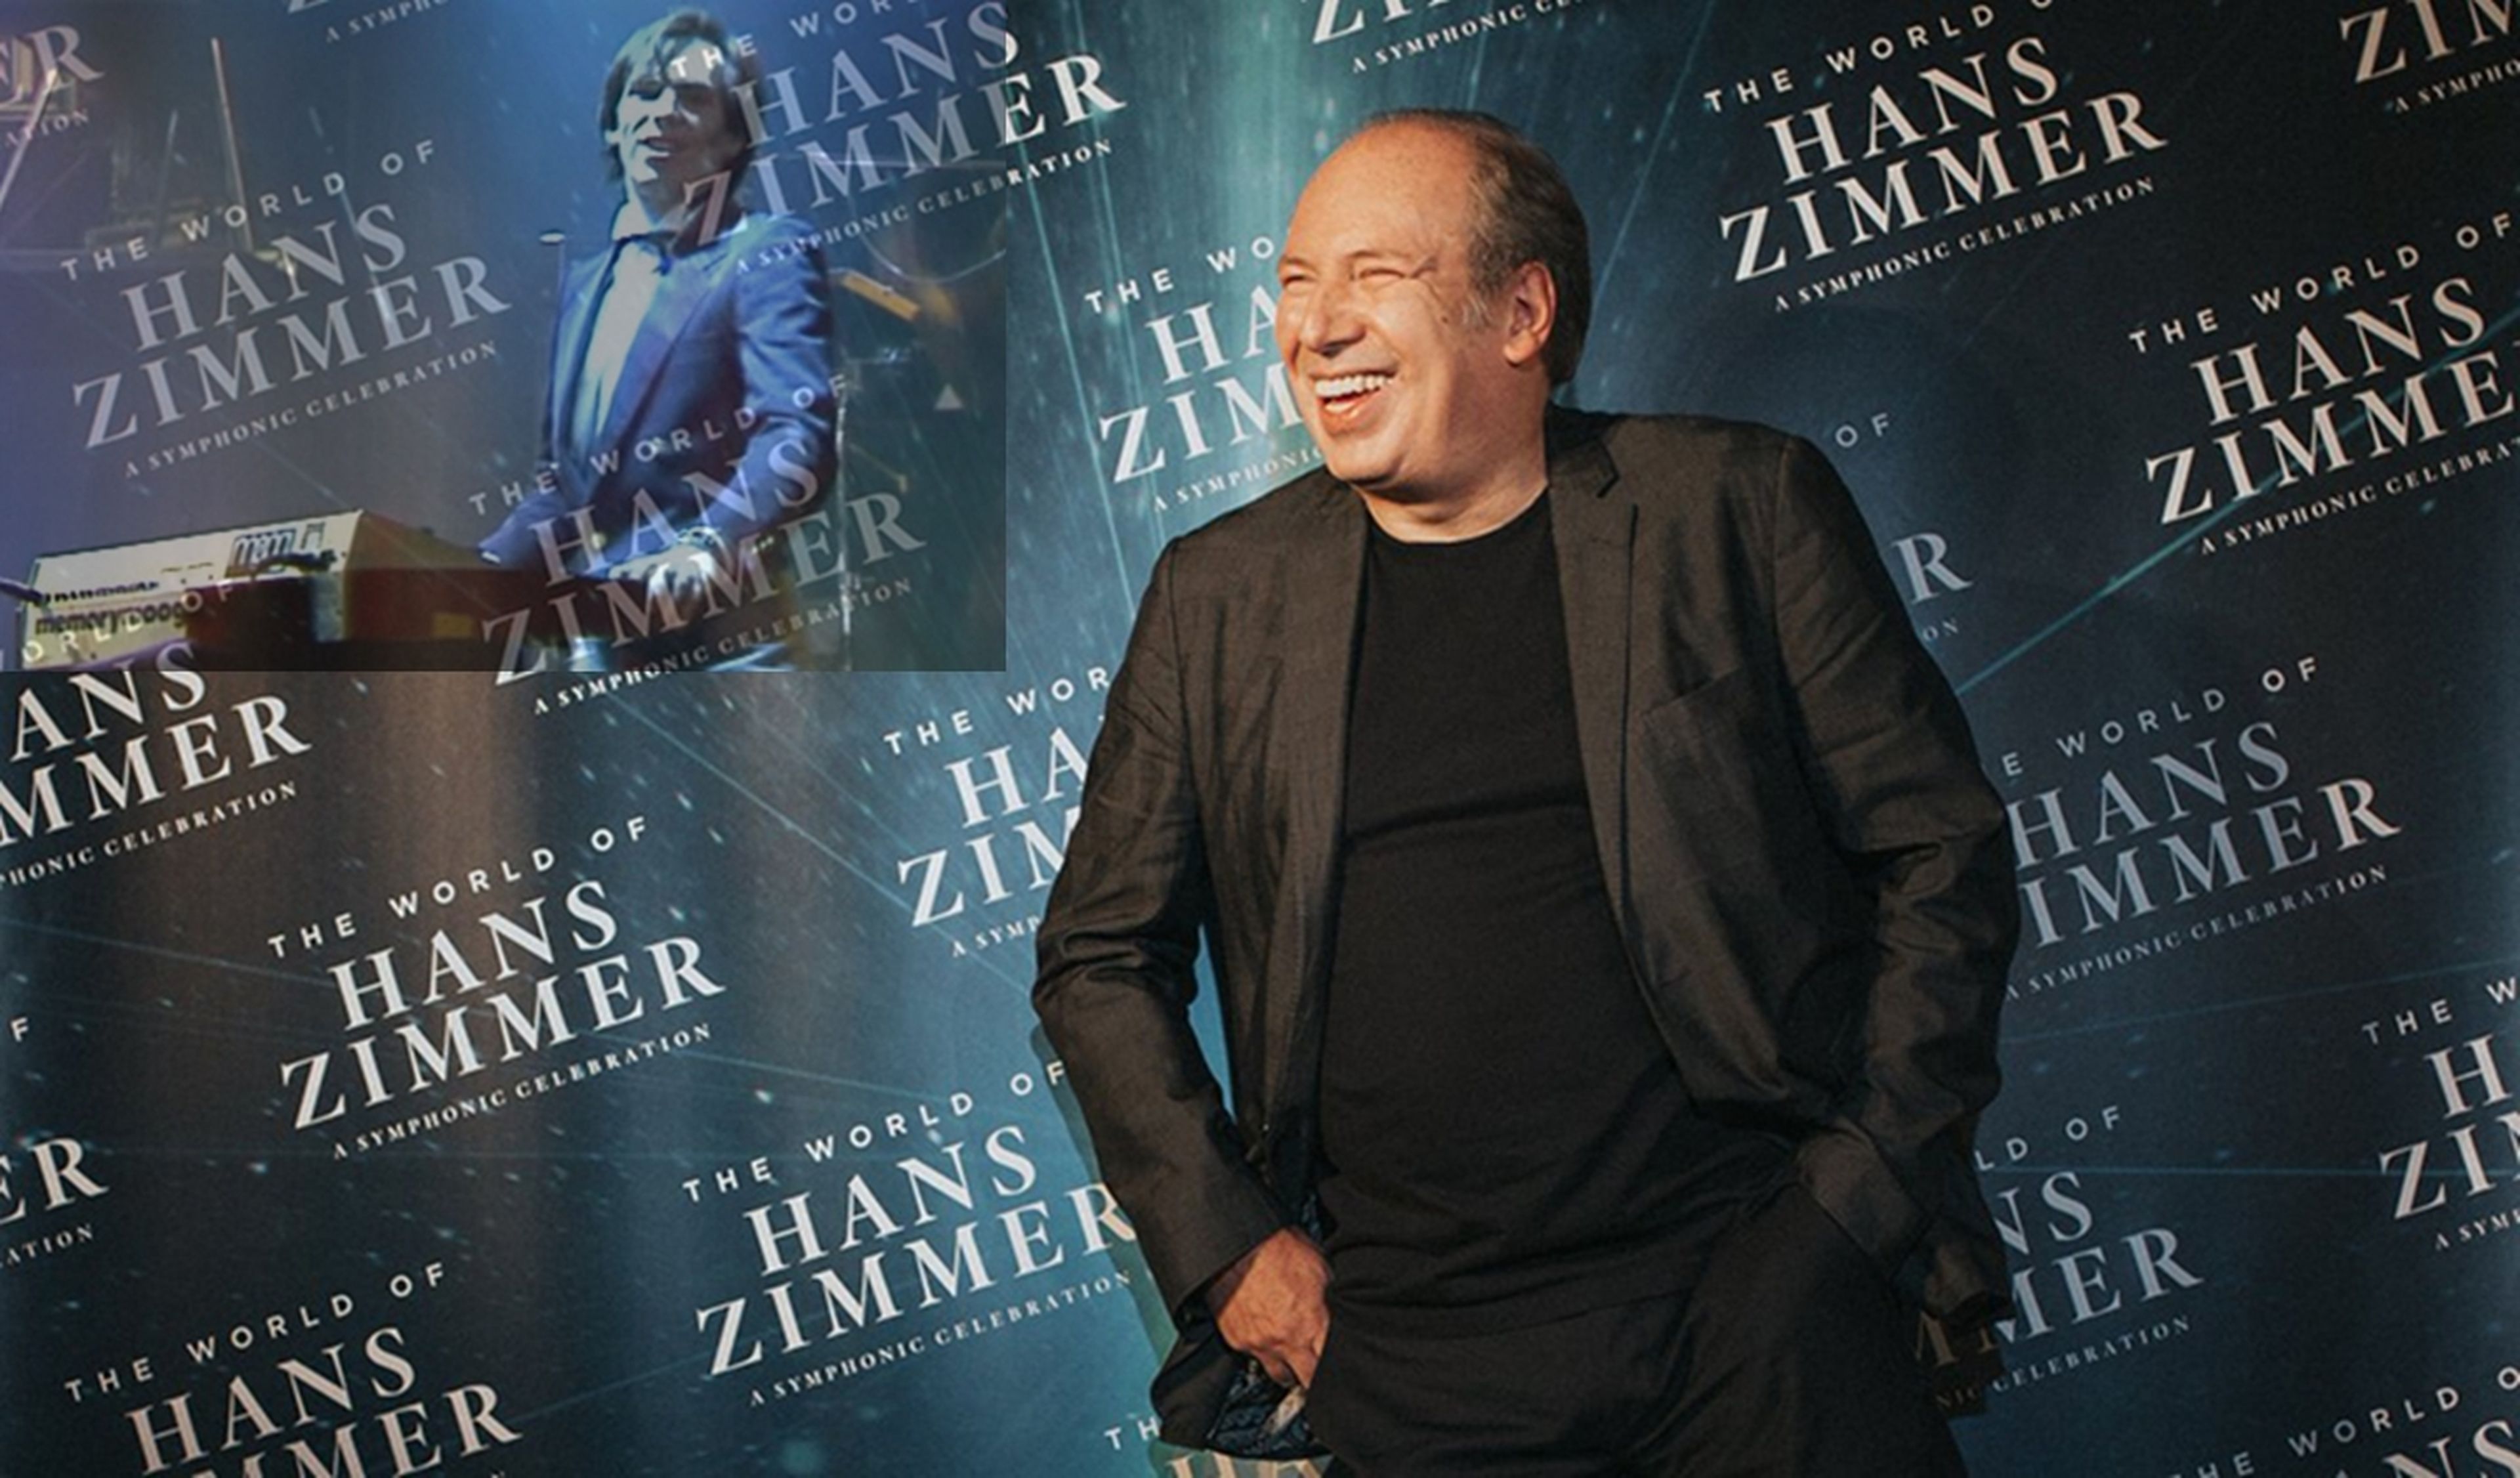 Hans Zimmer, compositor de bandas sonoras, fue teclista del grupo español Mecano